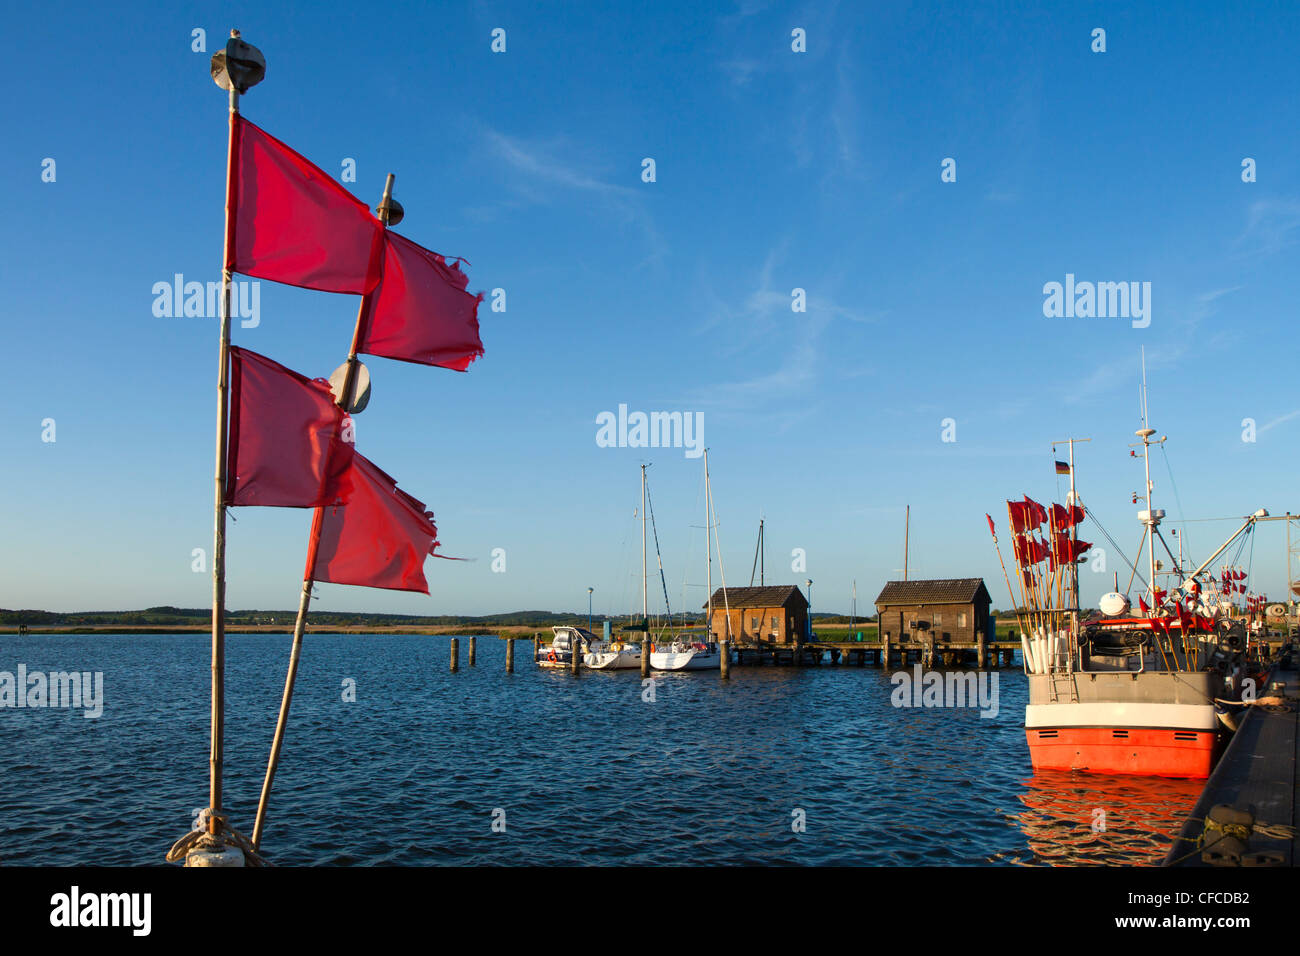 Le barche nel porto, Gager, Ruegen isola, Mar Baltico, Meclemburgo-Pomerania Occidentale, Germania Foto Stock